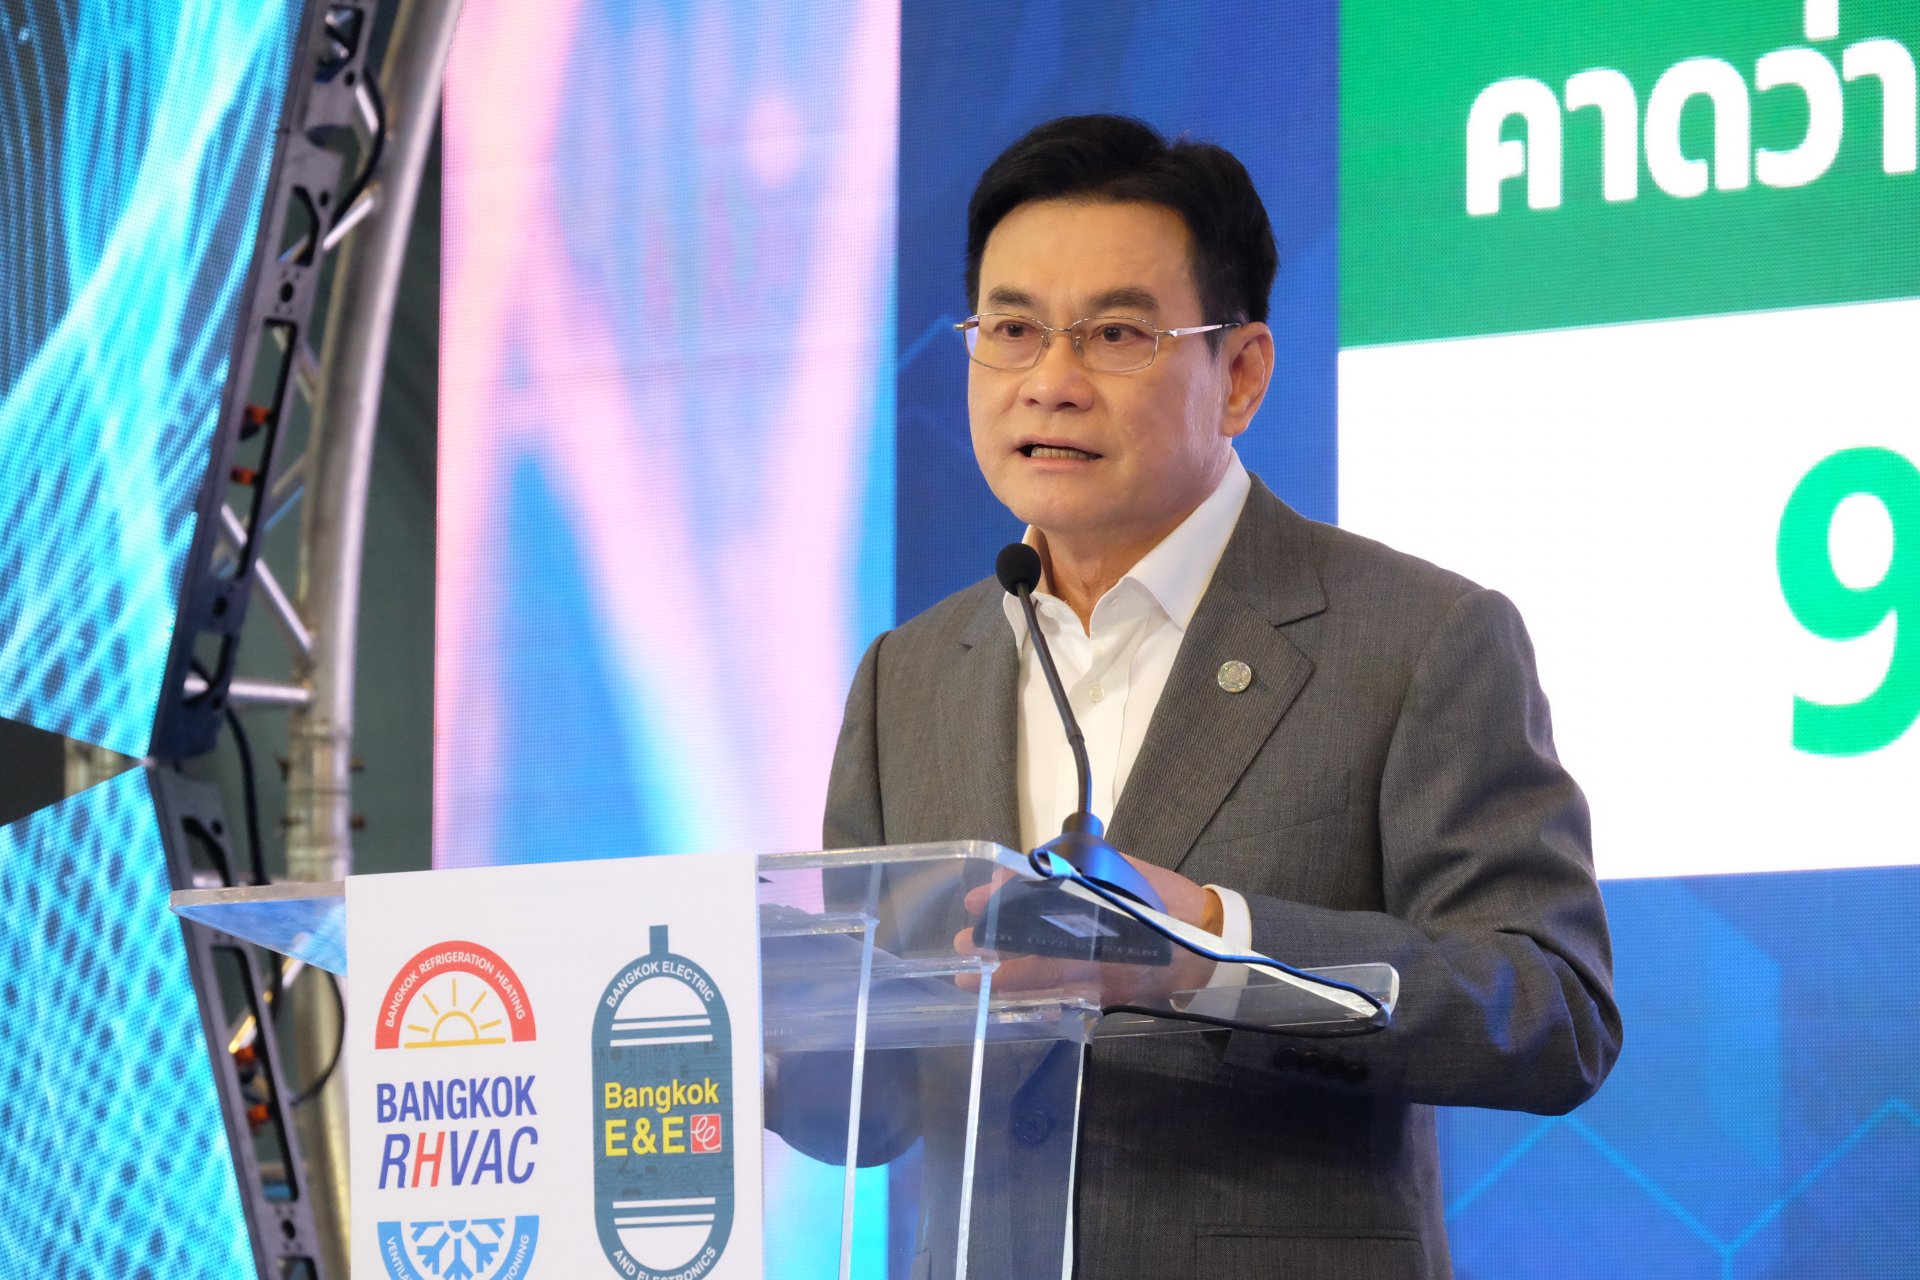 ต่างชาติแห่ซื้อ!! “จุรินทร์” เปิด Bangkok RHVAC 2022 และ Bangkok E&E 2022 "ขายแอร์-เครื่องใช้ไฟฟ้าไทย" 3 วันได้แล้วกว่า 8,500 ล้าน คนแน่นไบเทคบางนา